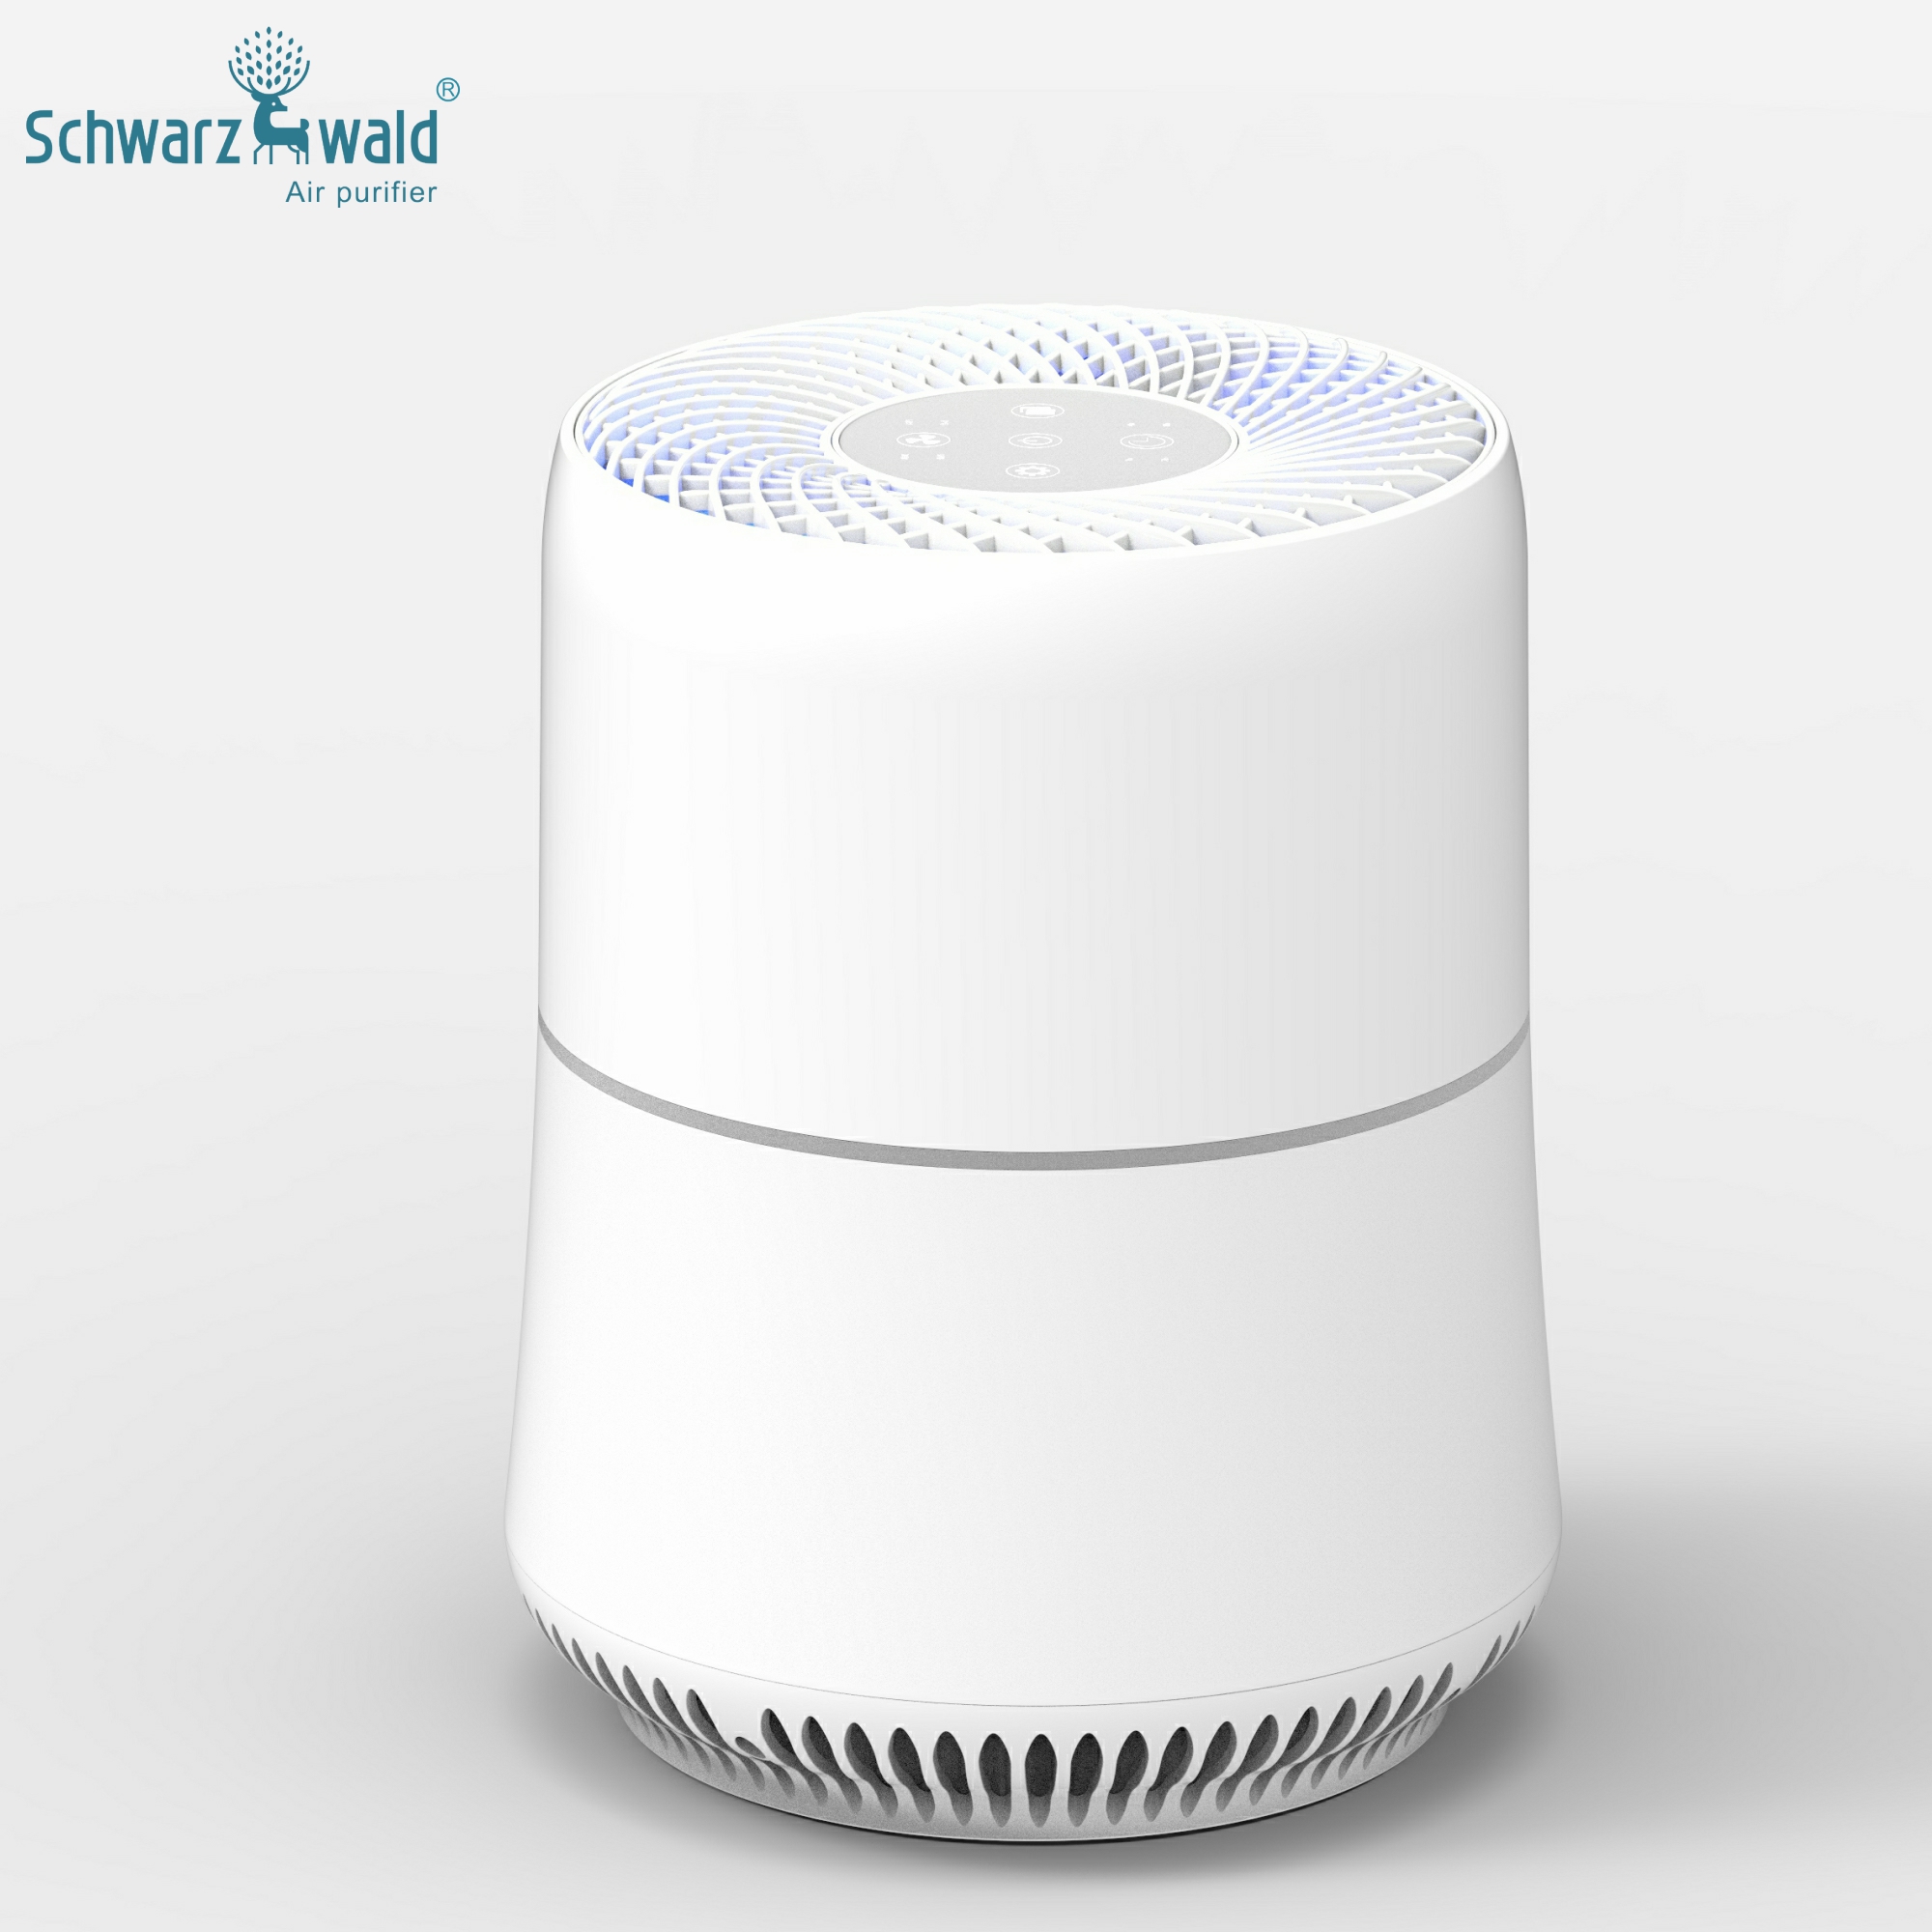 Čistič vzduchu s nízkou spotřebou místnosti s ovládáním aplikace WiFi